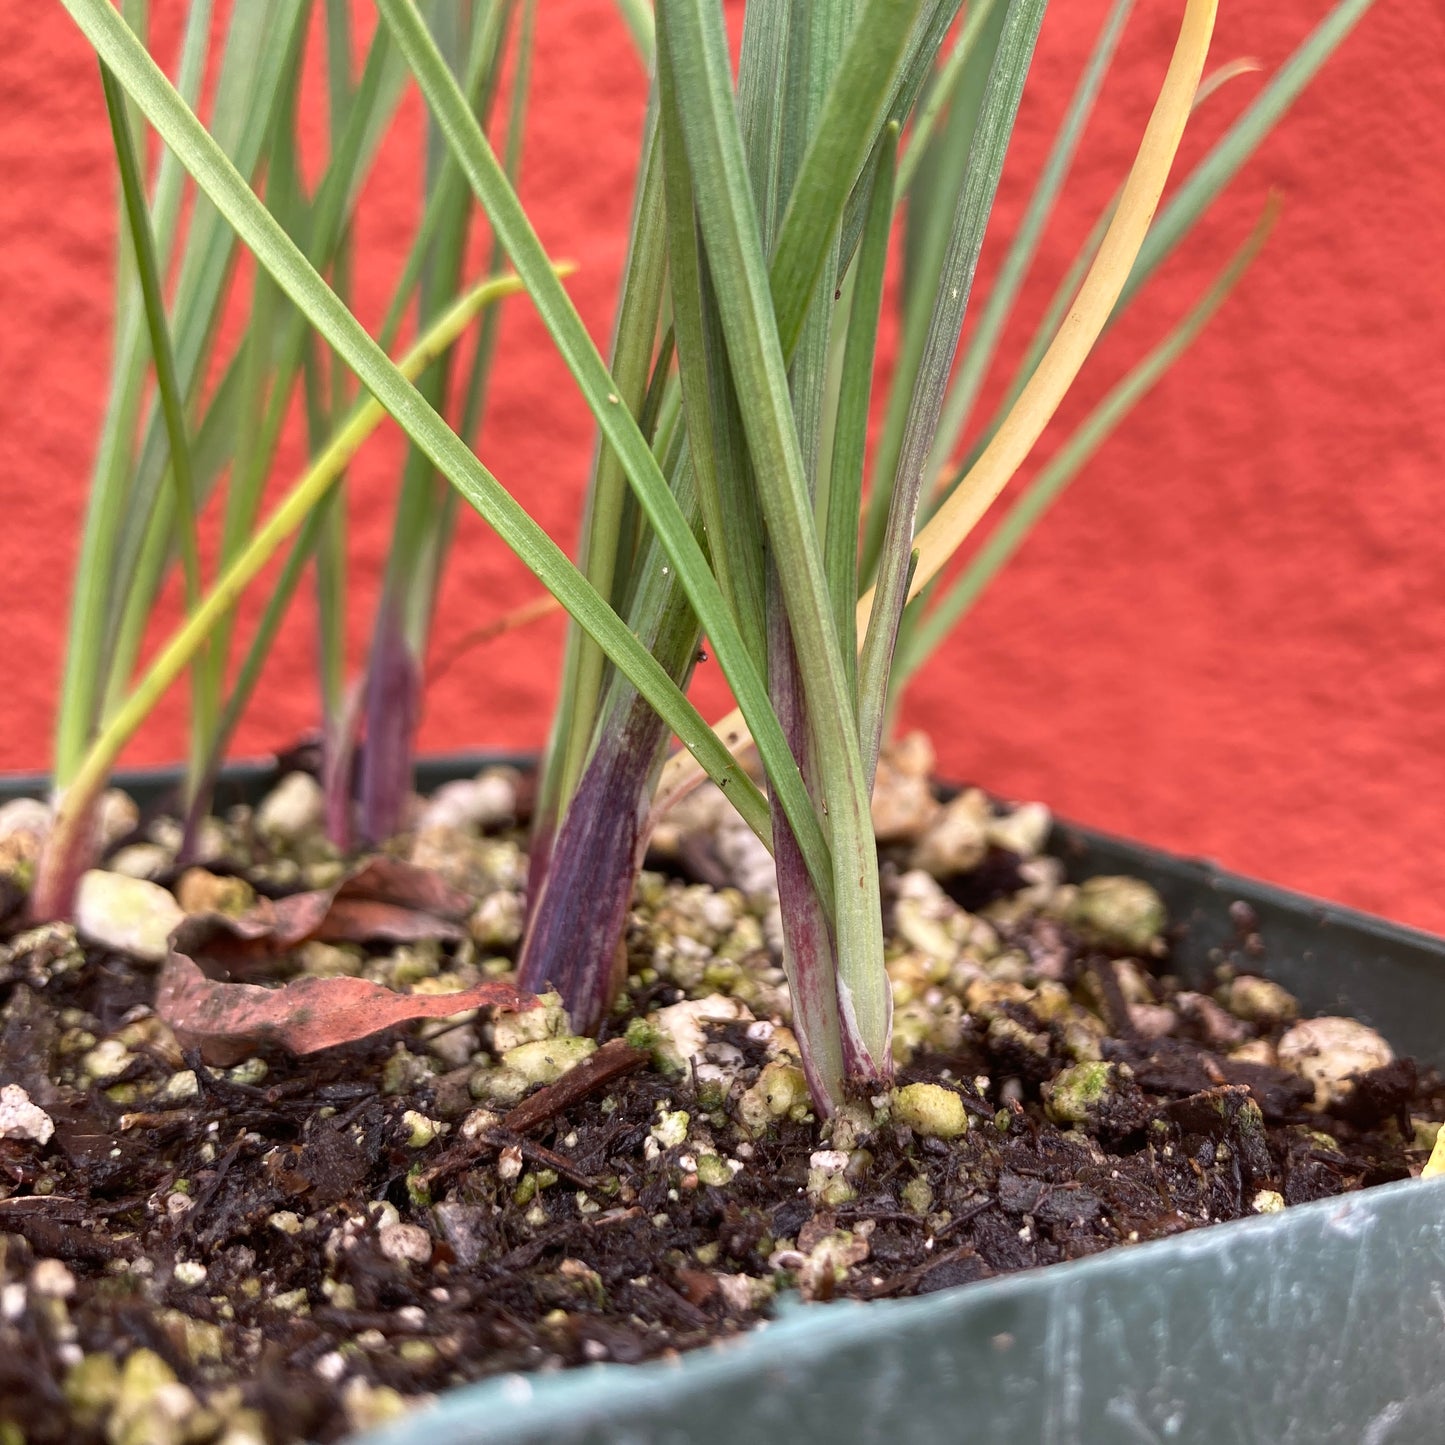 Allium unifolium - Single-leaved Onion